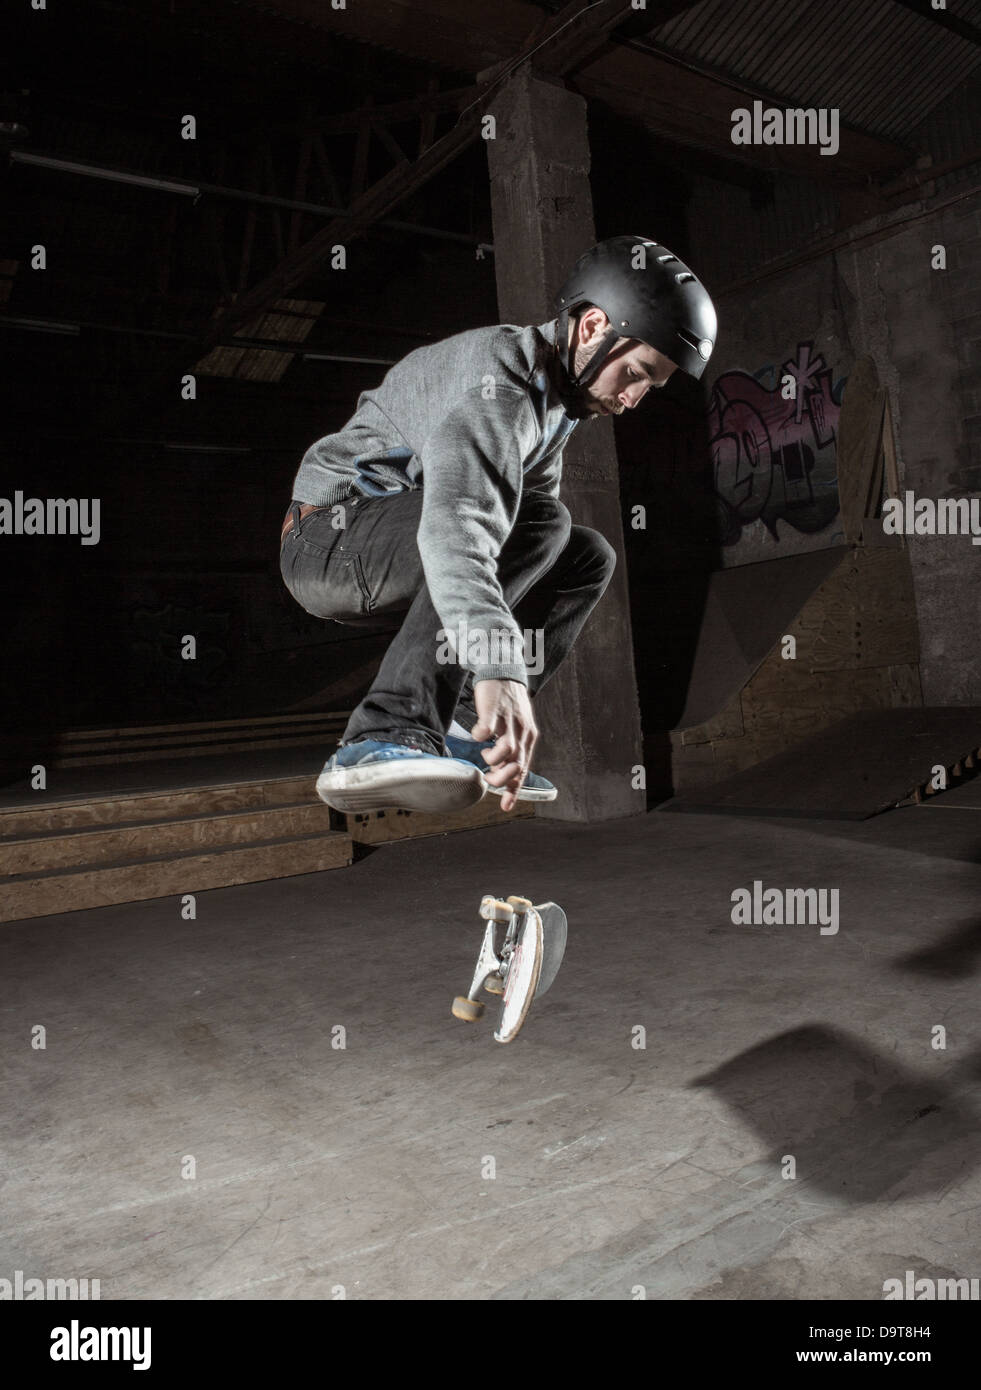 Skater doing 360 trick Stock Photo